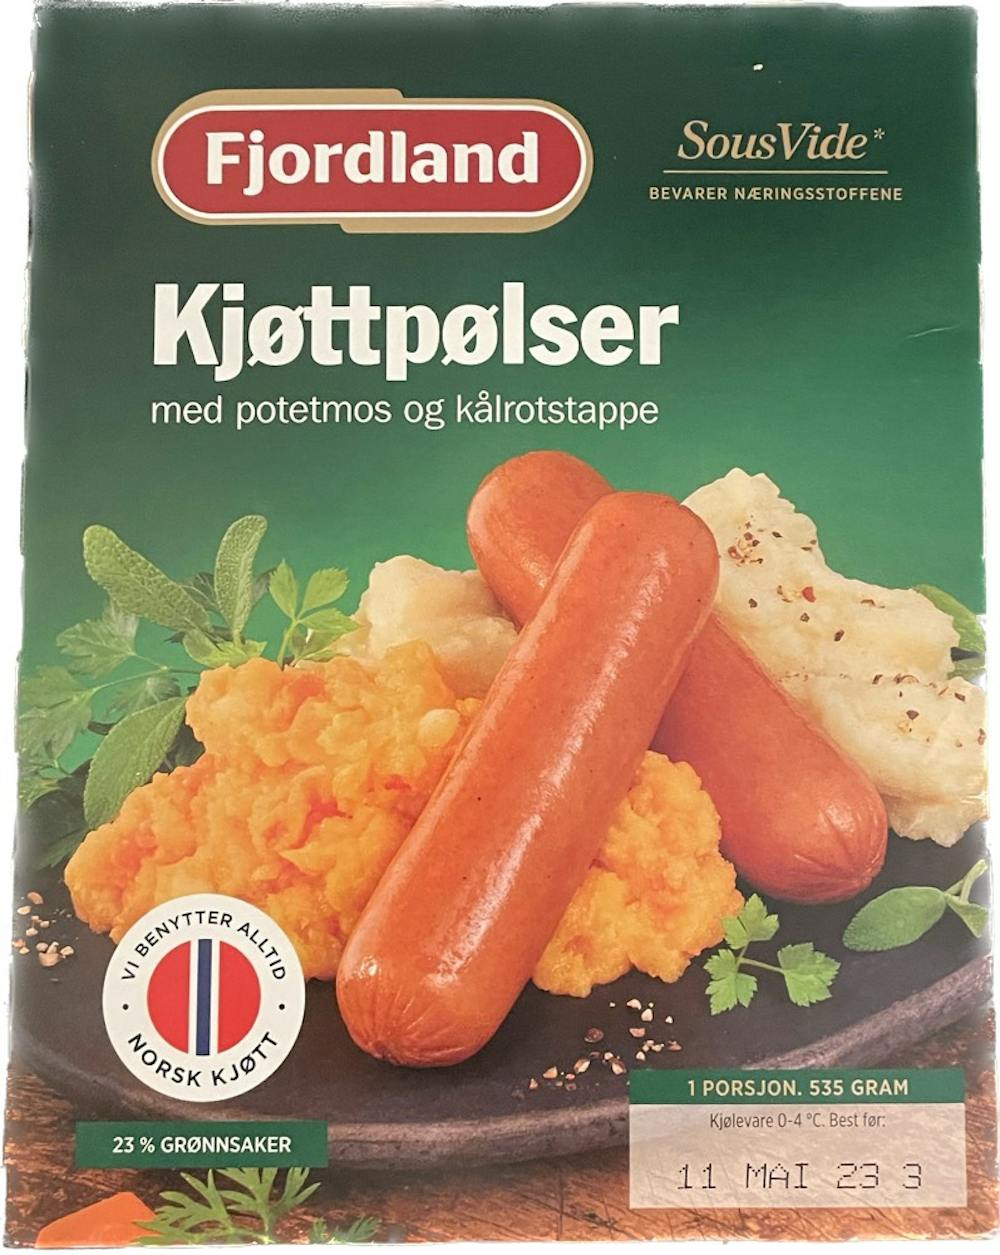 Kjøttpølser med potetmos og kålrotstappe, Fjordland